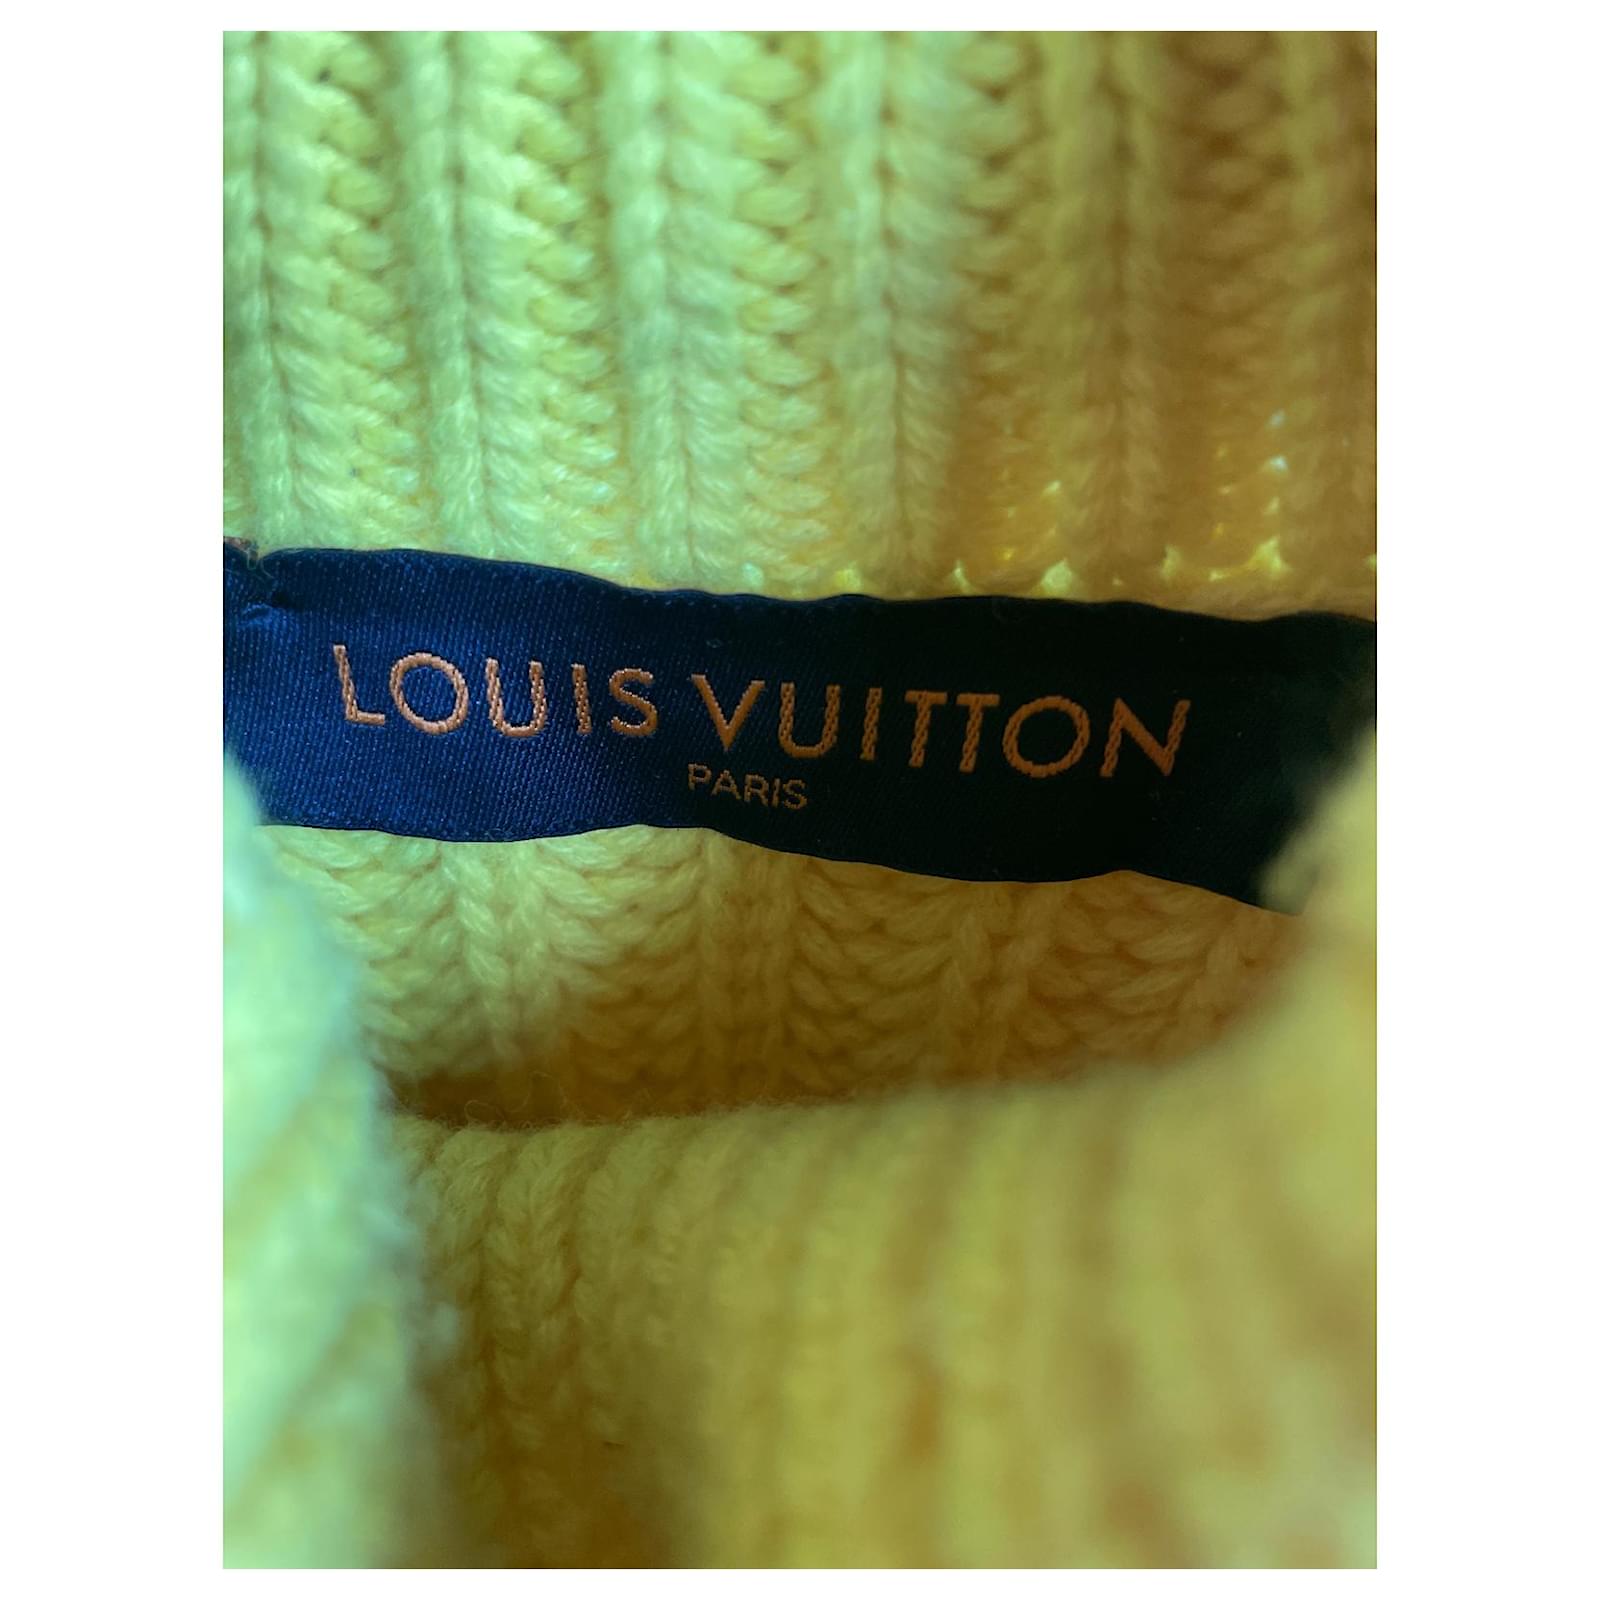 Maglione a collo alto con mezza zip Louis Vuitton in lana rossa